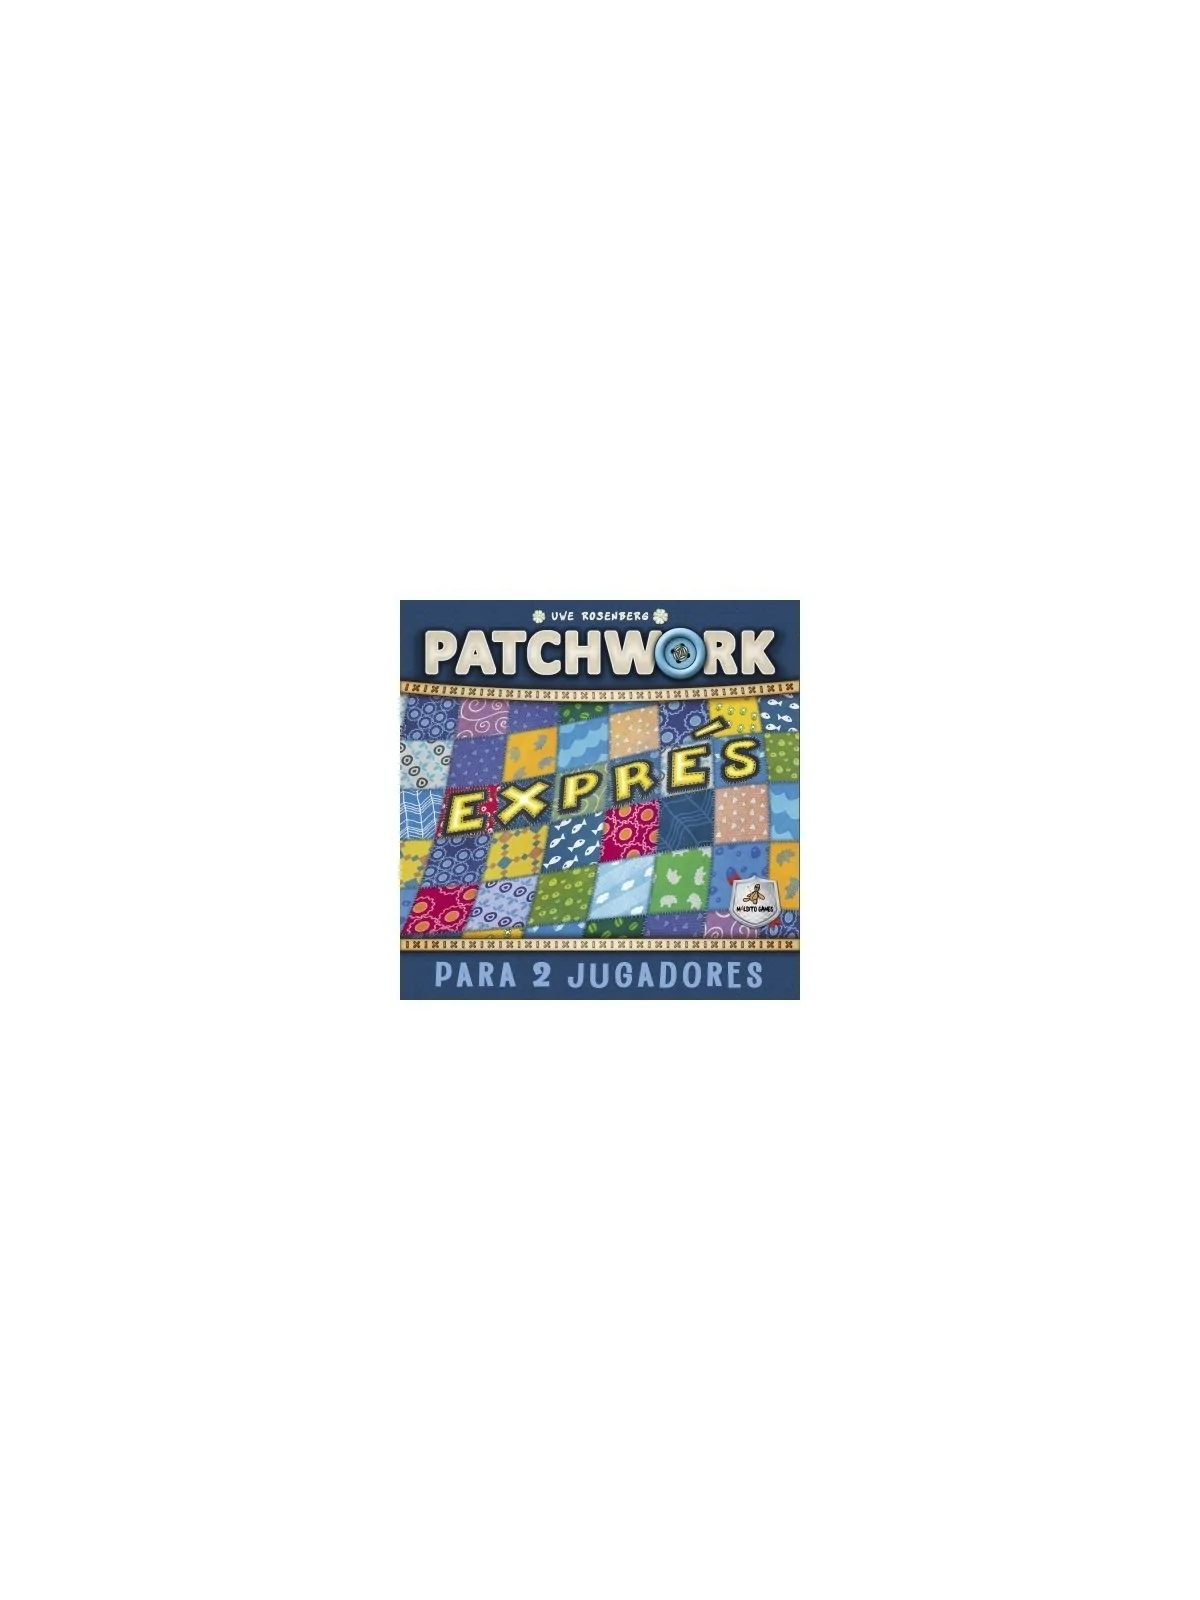 Comprar Patchwork Exprés barato al mejor precio 16,20 € de Maldito Gam